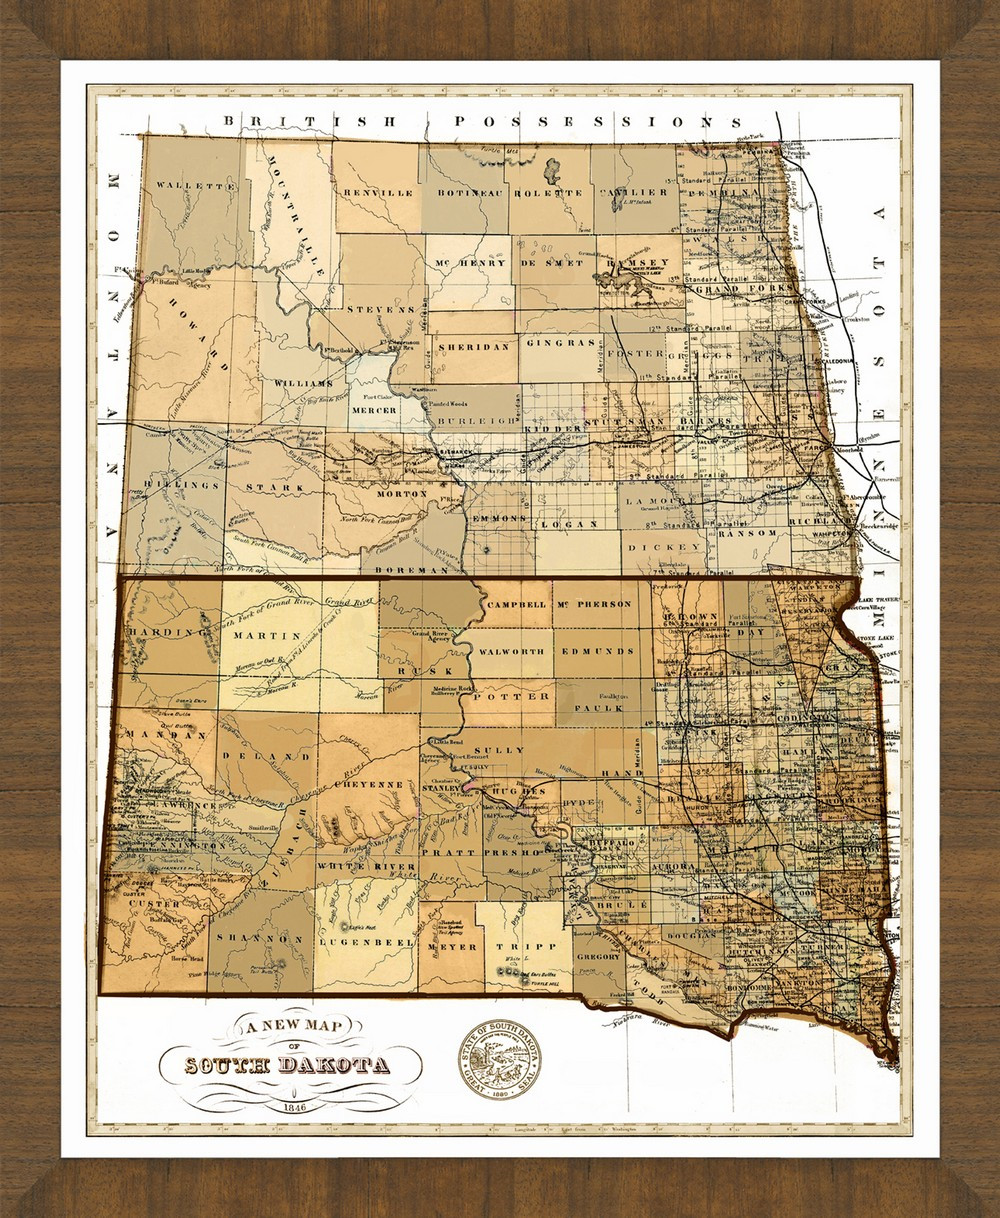 Old Map of South Dakota